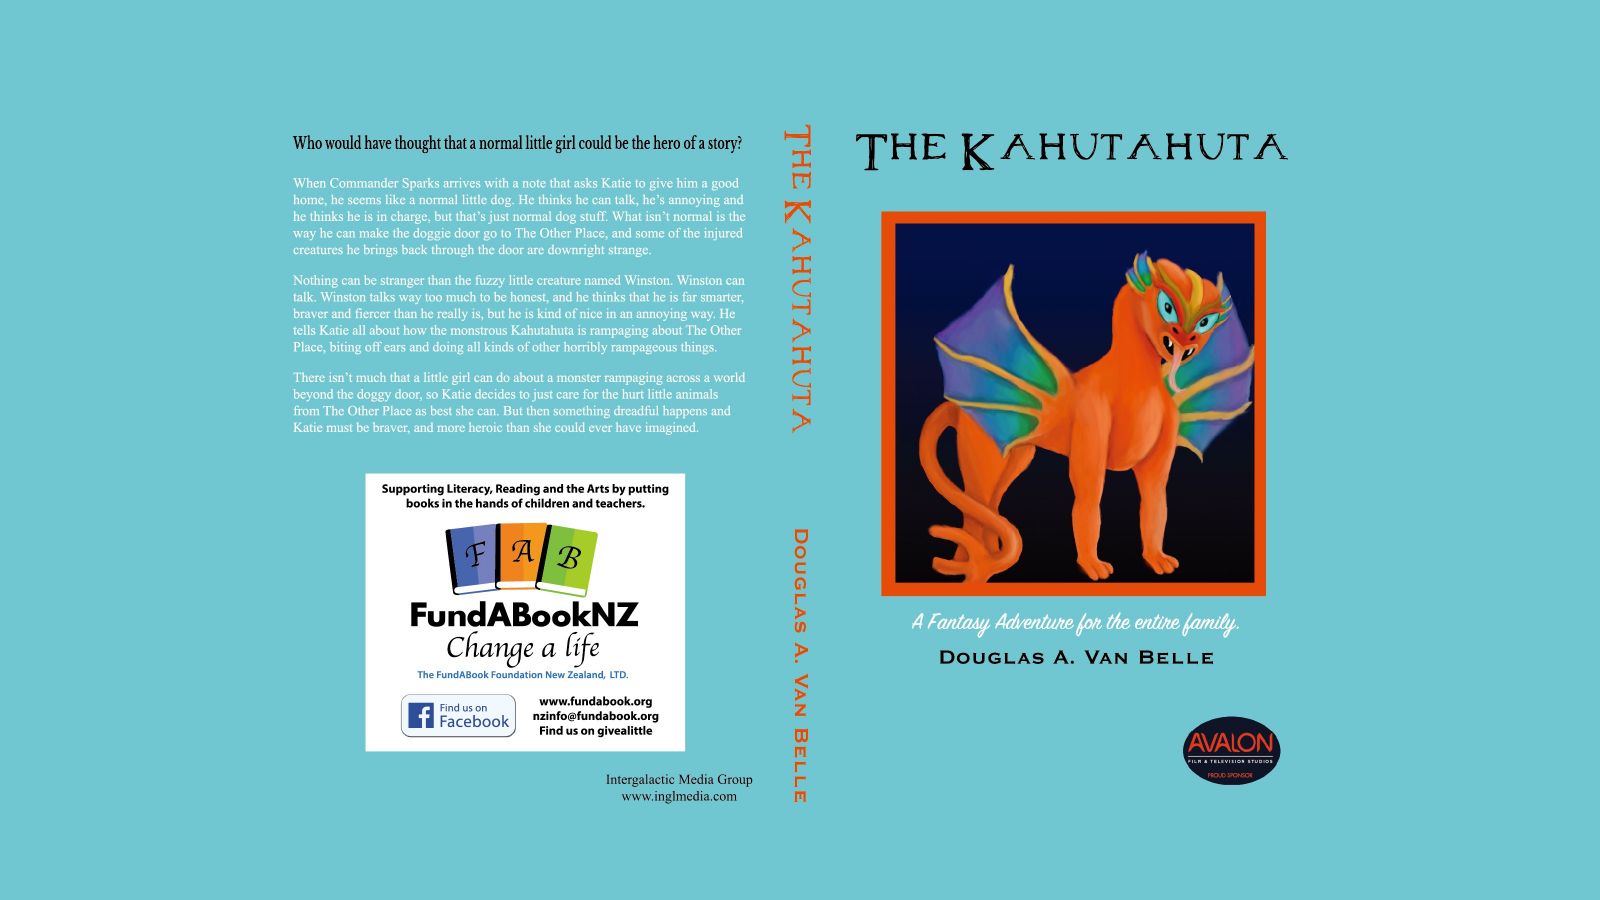 The Kahutahuta book cover